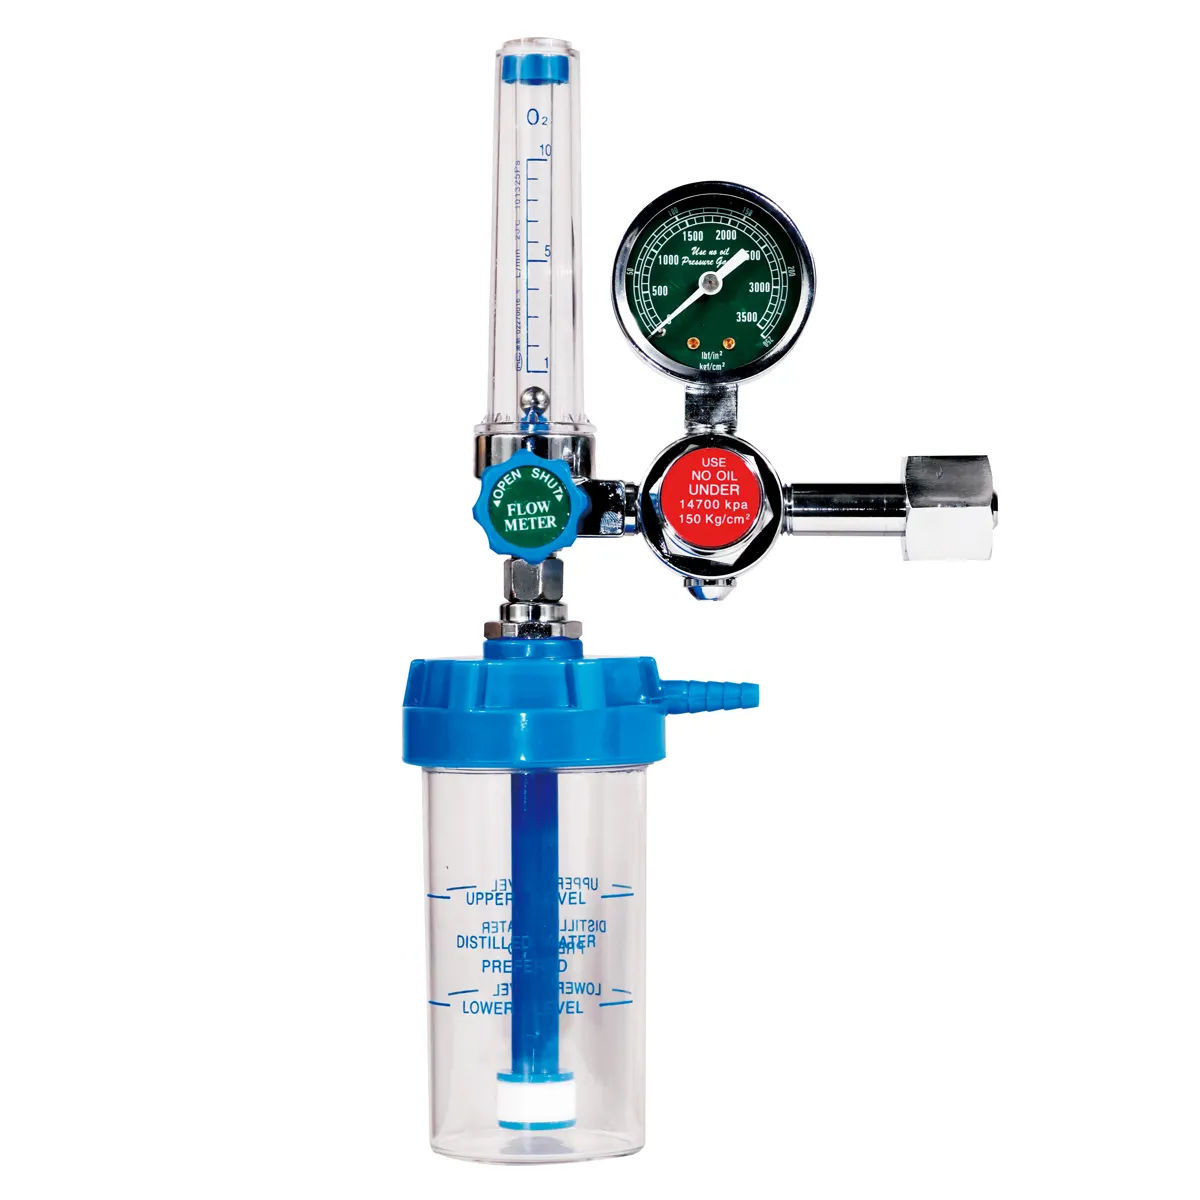 Medical Oxygen Regulators Manometer Oxygen Pressure Regulator With Humidifier